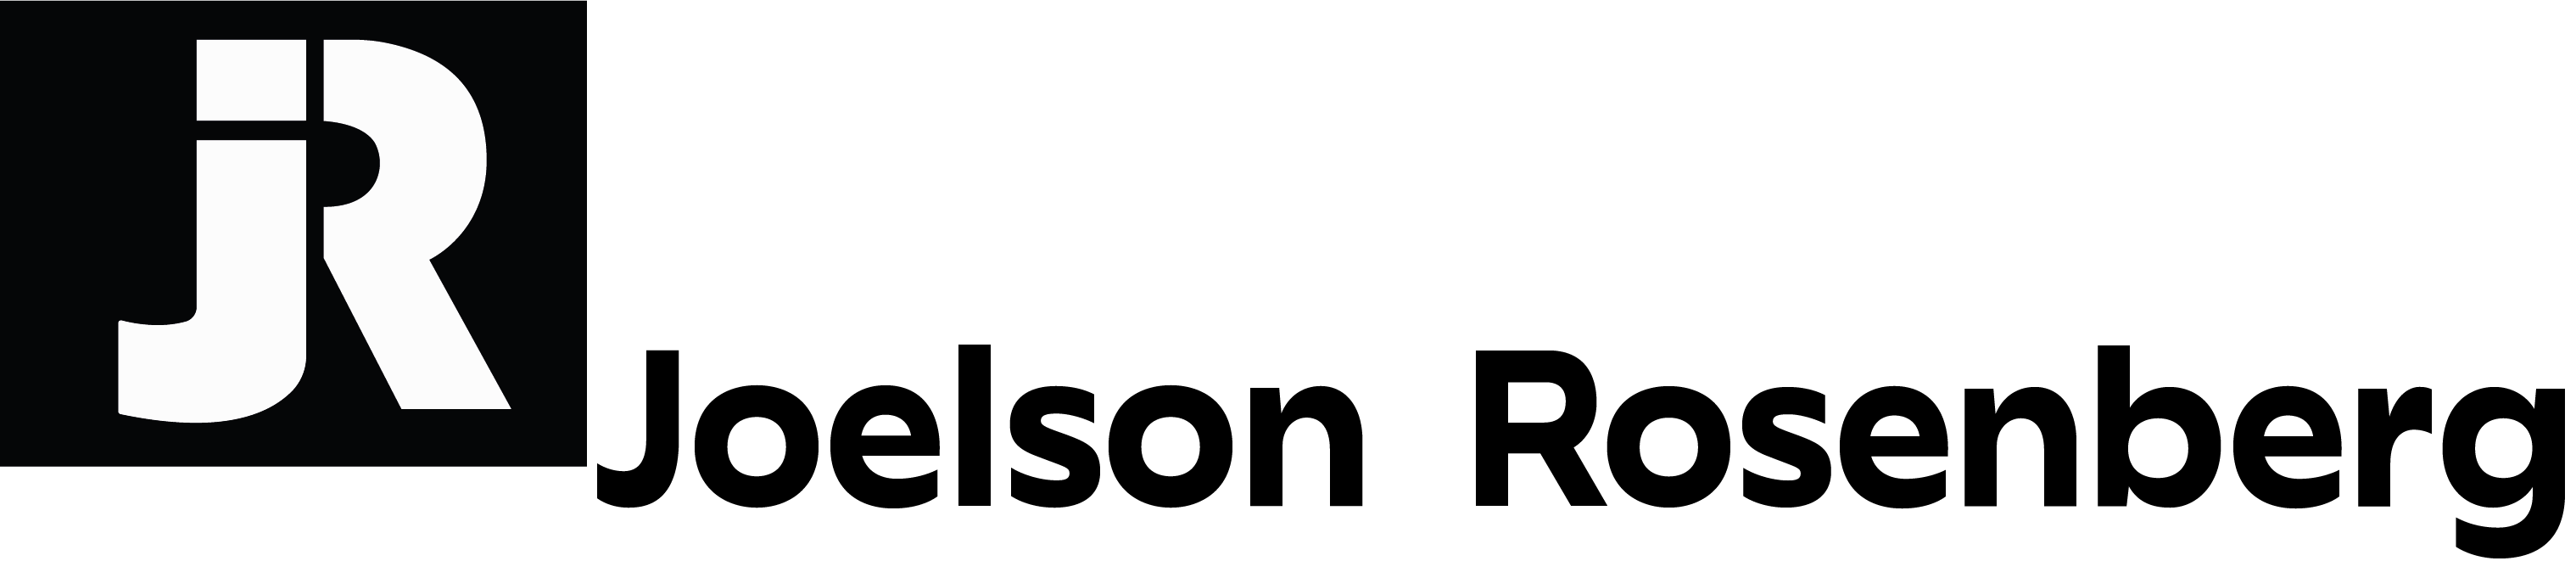 Joelson Rosenberg logo